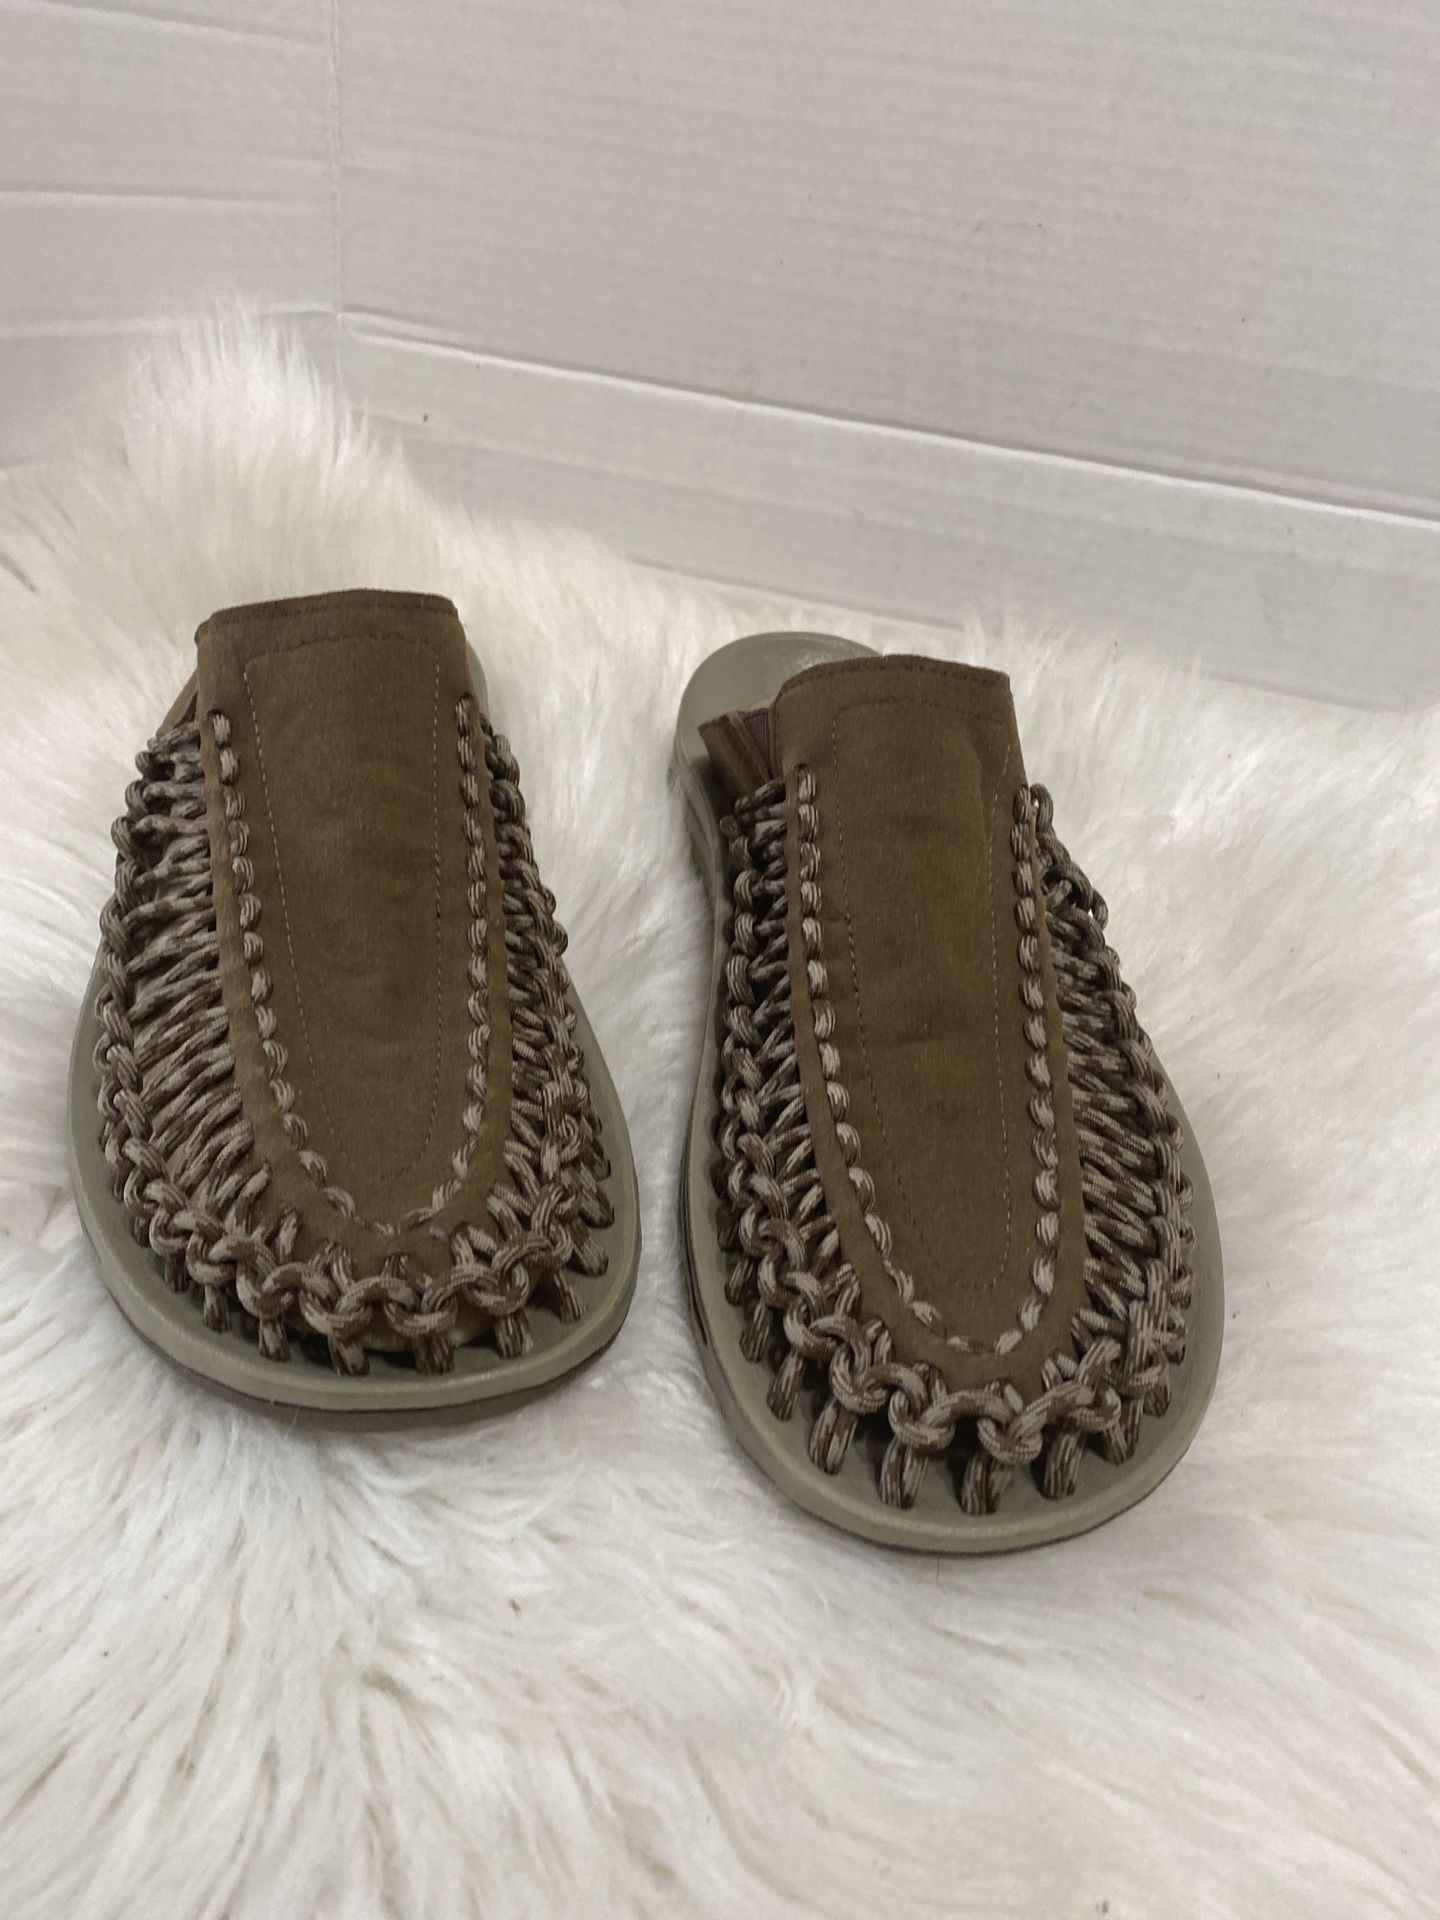 Keen Brown Woven Casual Slide Comfort Outdoor Sandals Shoes Men's 9